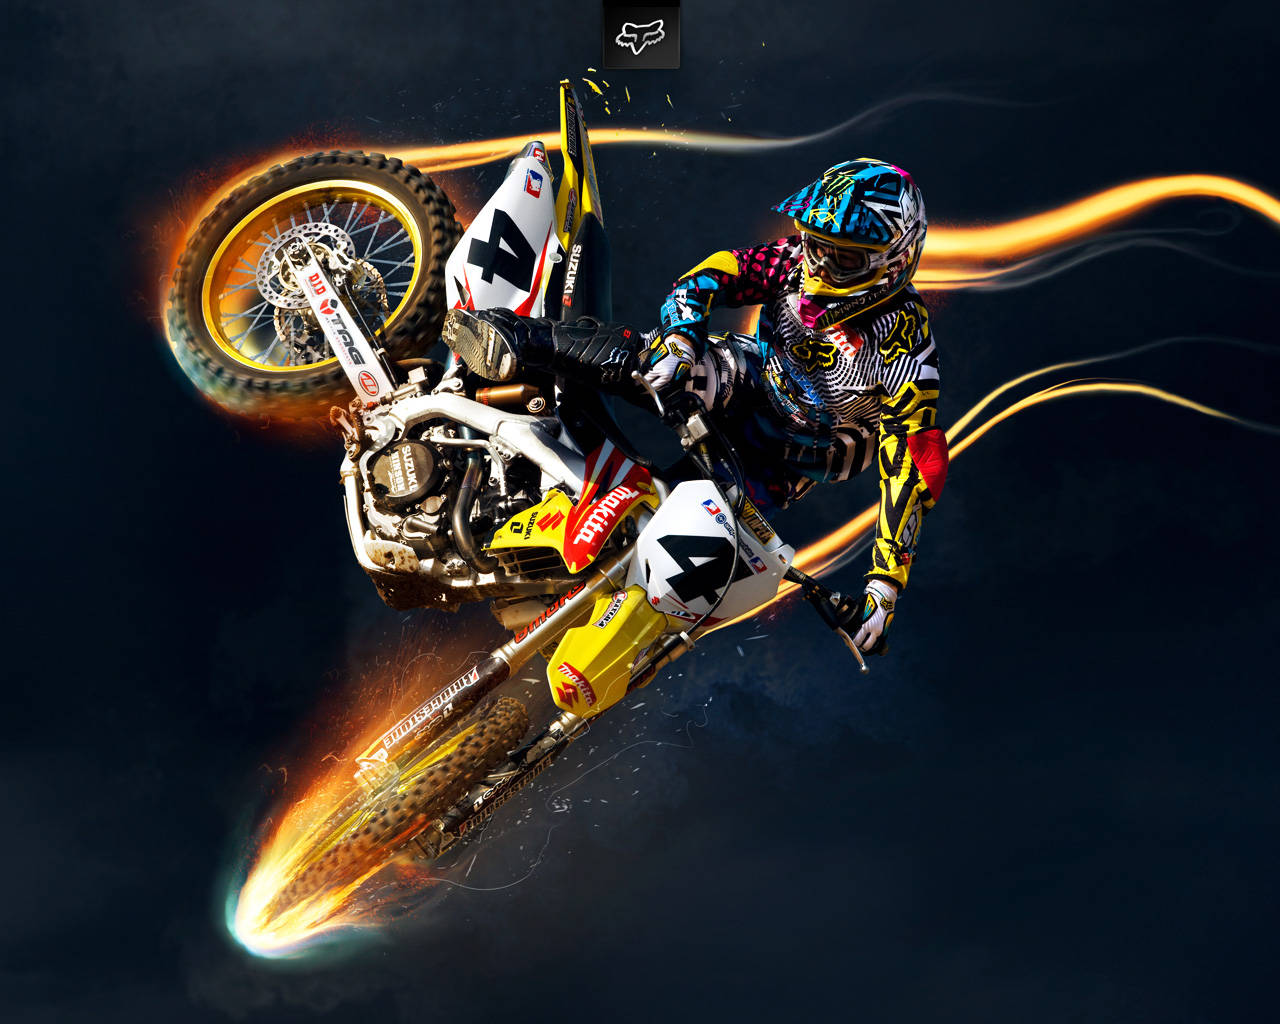 [100+] Fondos de fotos de Motocross de Fox | Wallpapers.com